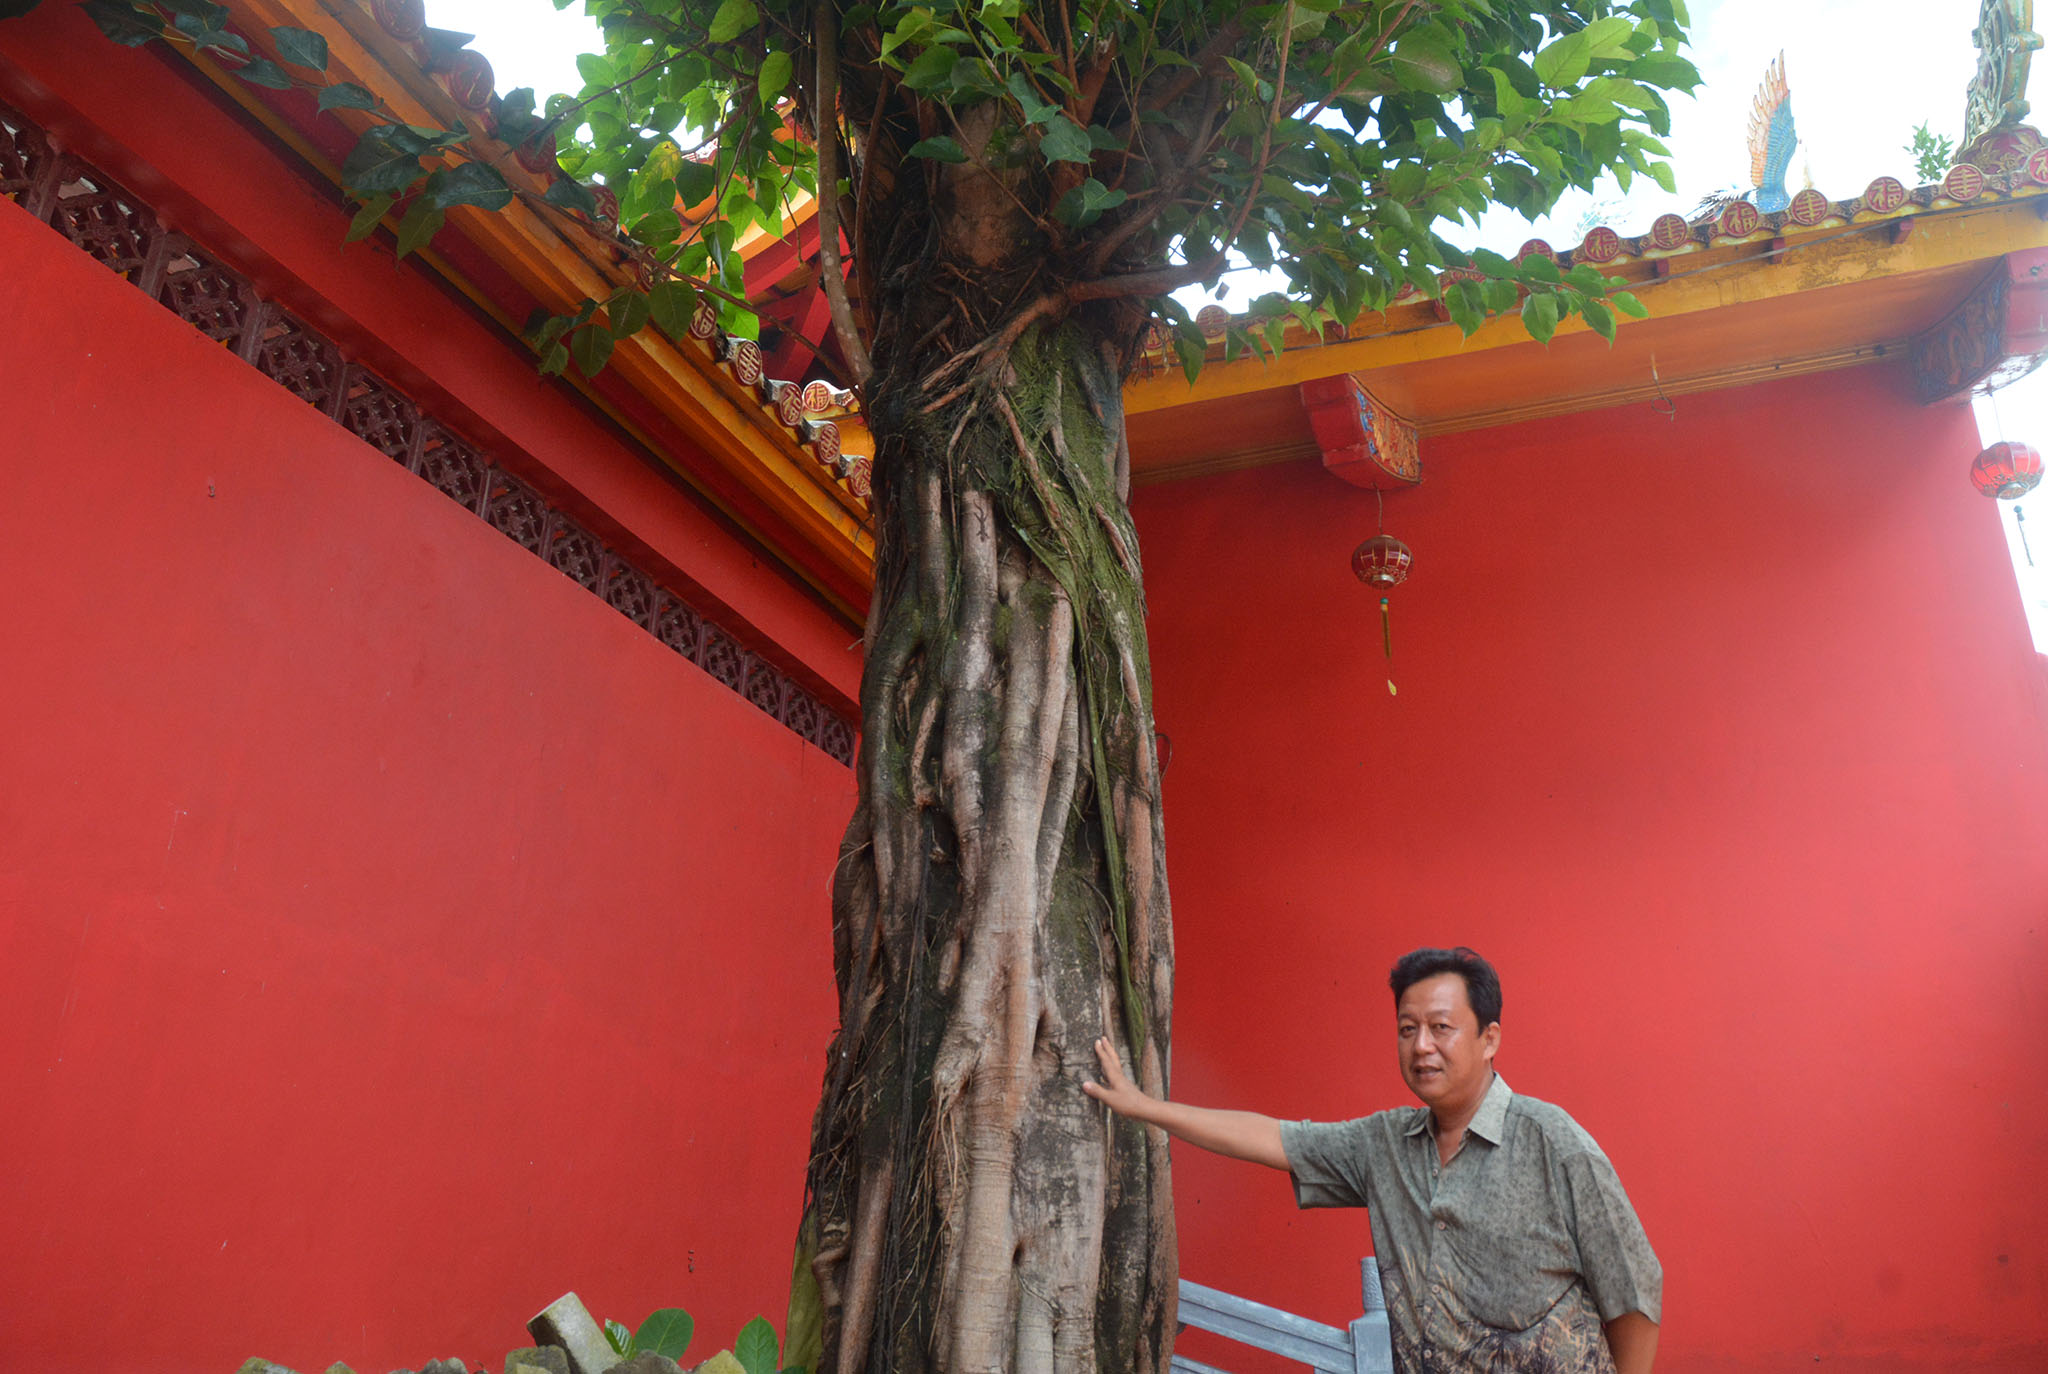 Pohon bodhi (Ficus religiosa) yang merupakan simbol pohon kehidupan ditanam di Kelenteng Boen Tek Bio Banyumas, Jawa Tengah | Foto : L Darmawan/Mongabay Indonesia